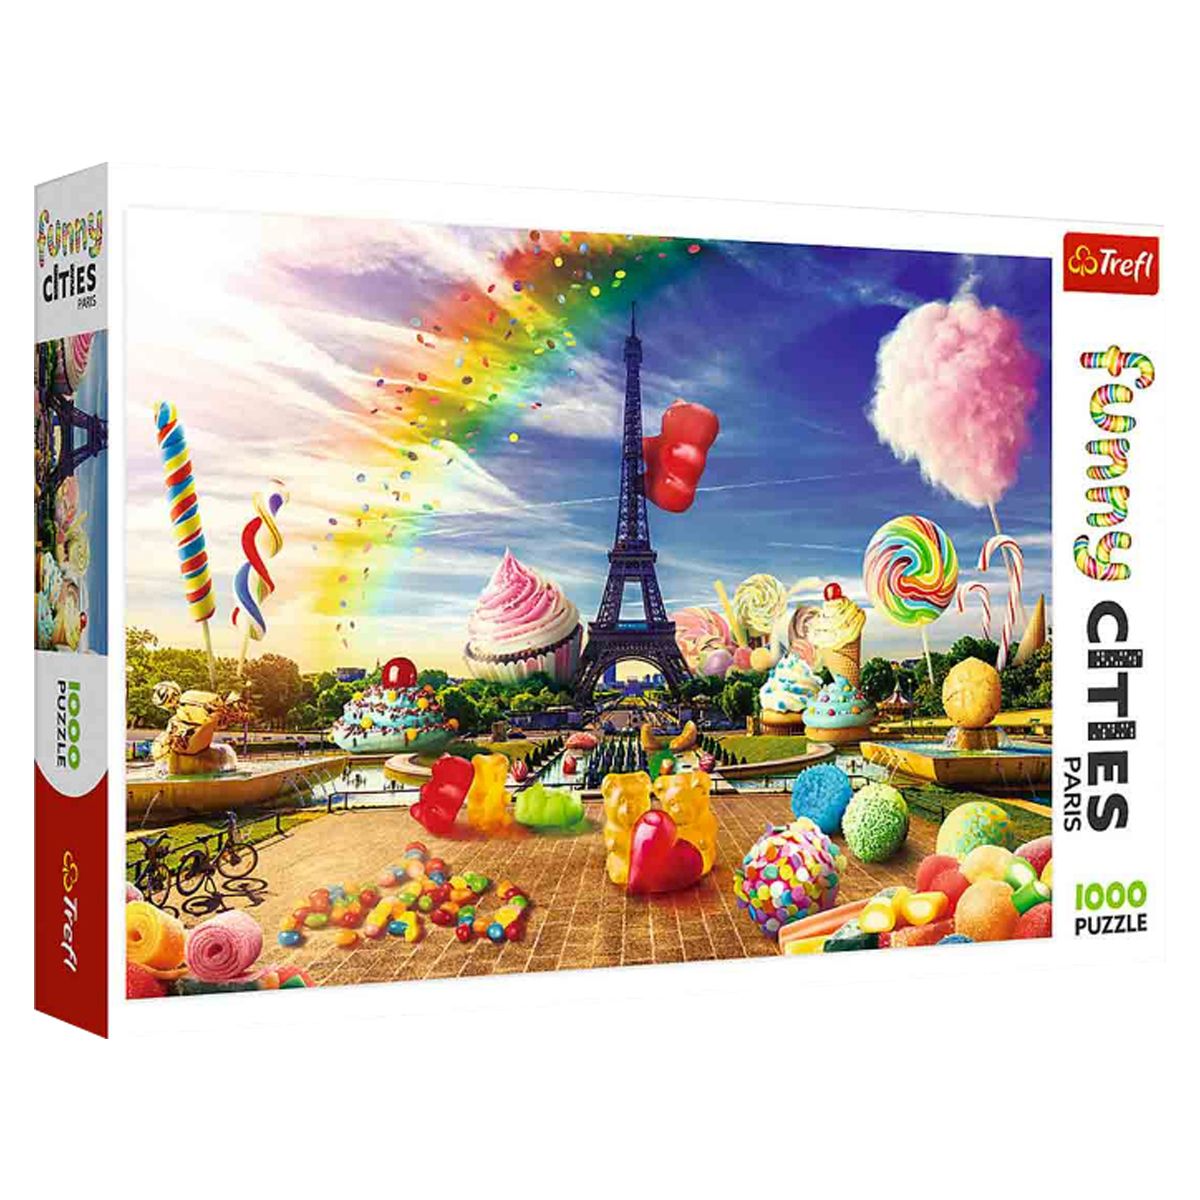 Пазлы "Веселые города: Сладкий Париж", 1000 элементов